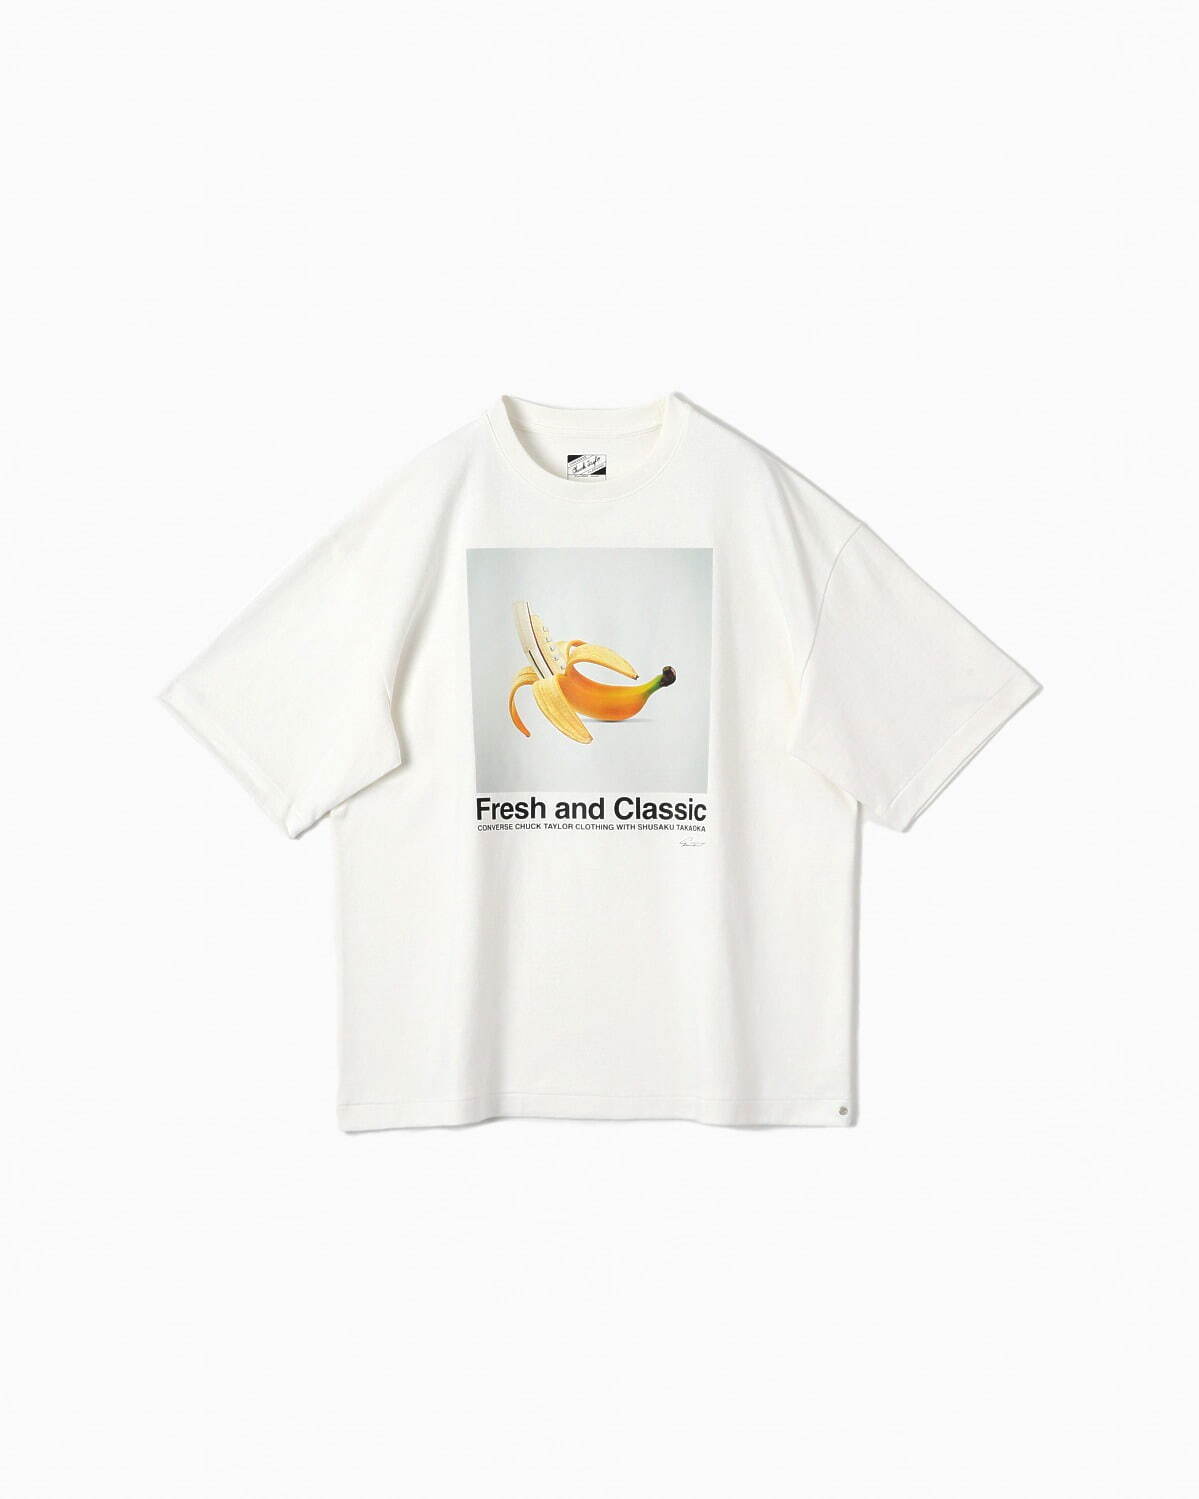 Tシャツ(高岡周策コラボ) 16,500円